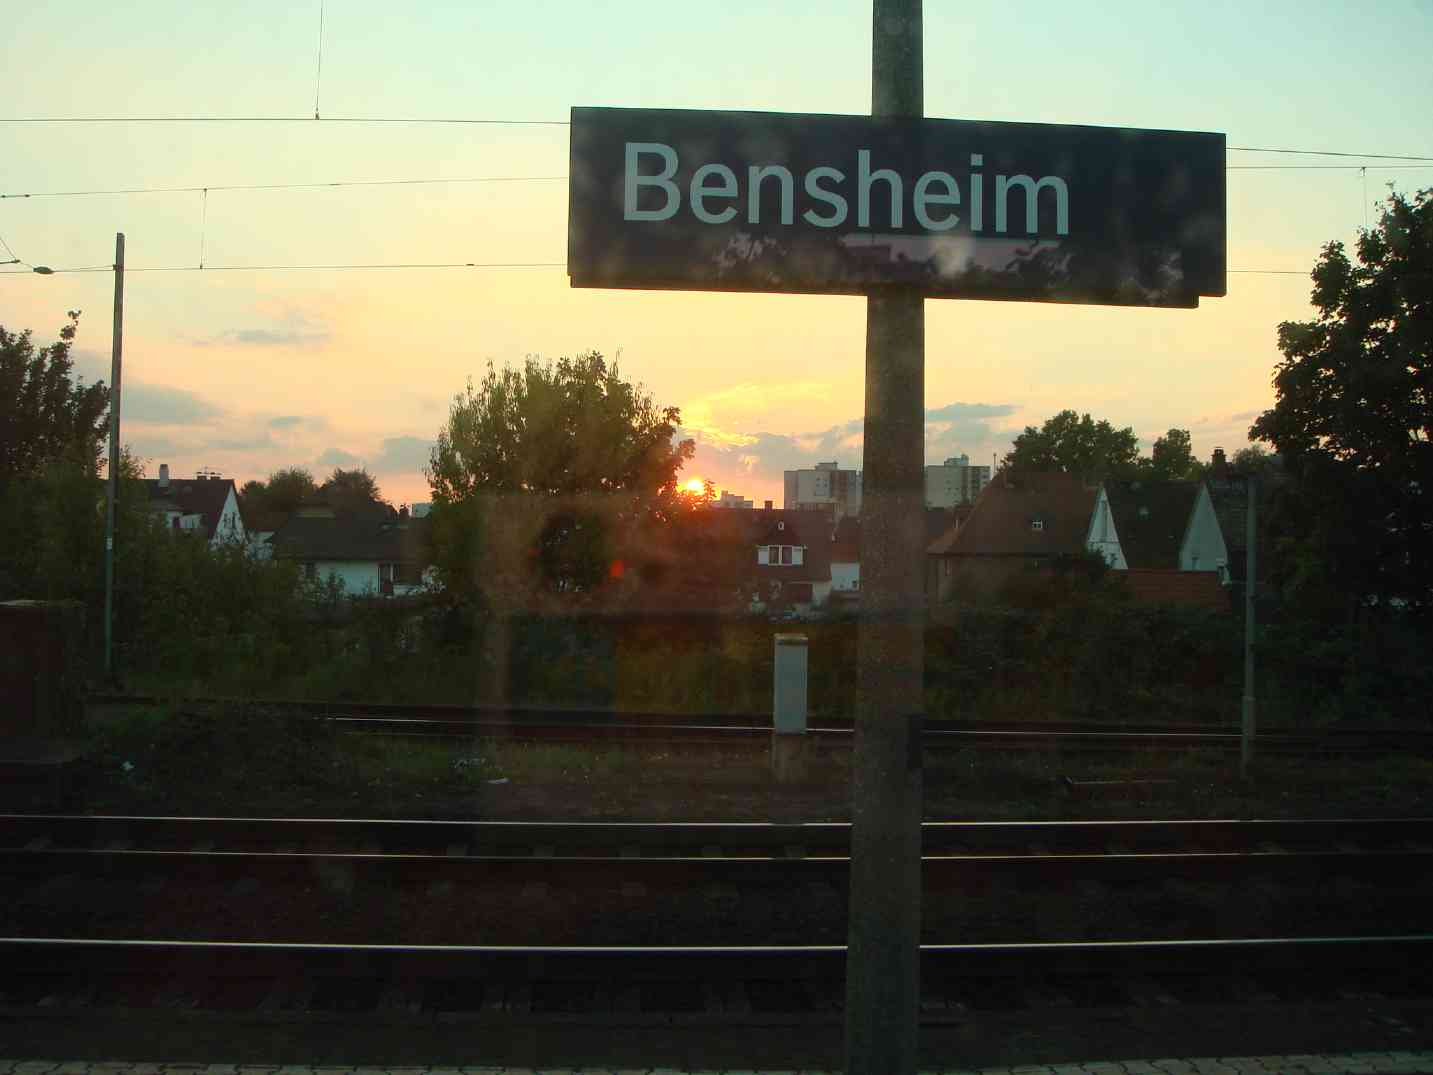 ベンスハイム。ここがどの辺りなのか分かりません。しかしもうフランクフルトの都会に近づいてもいい頃です